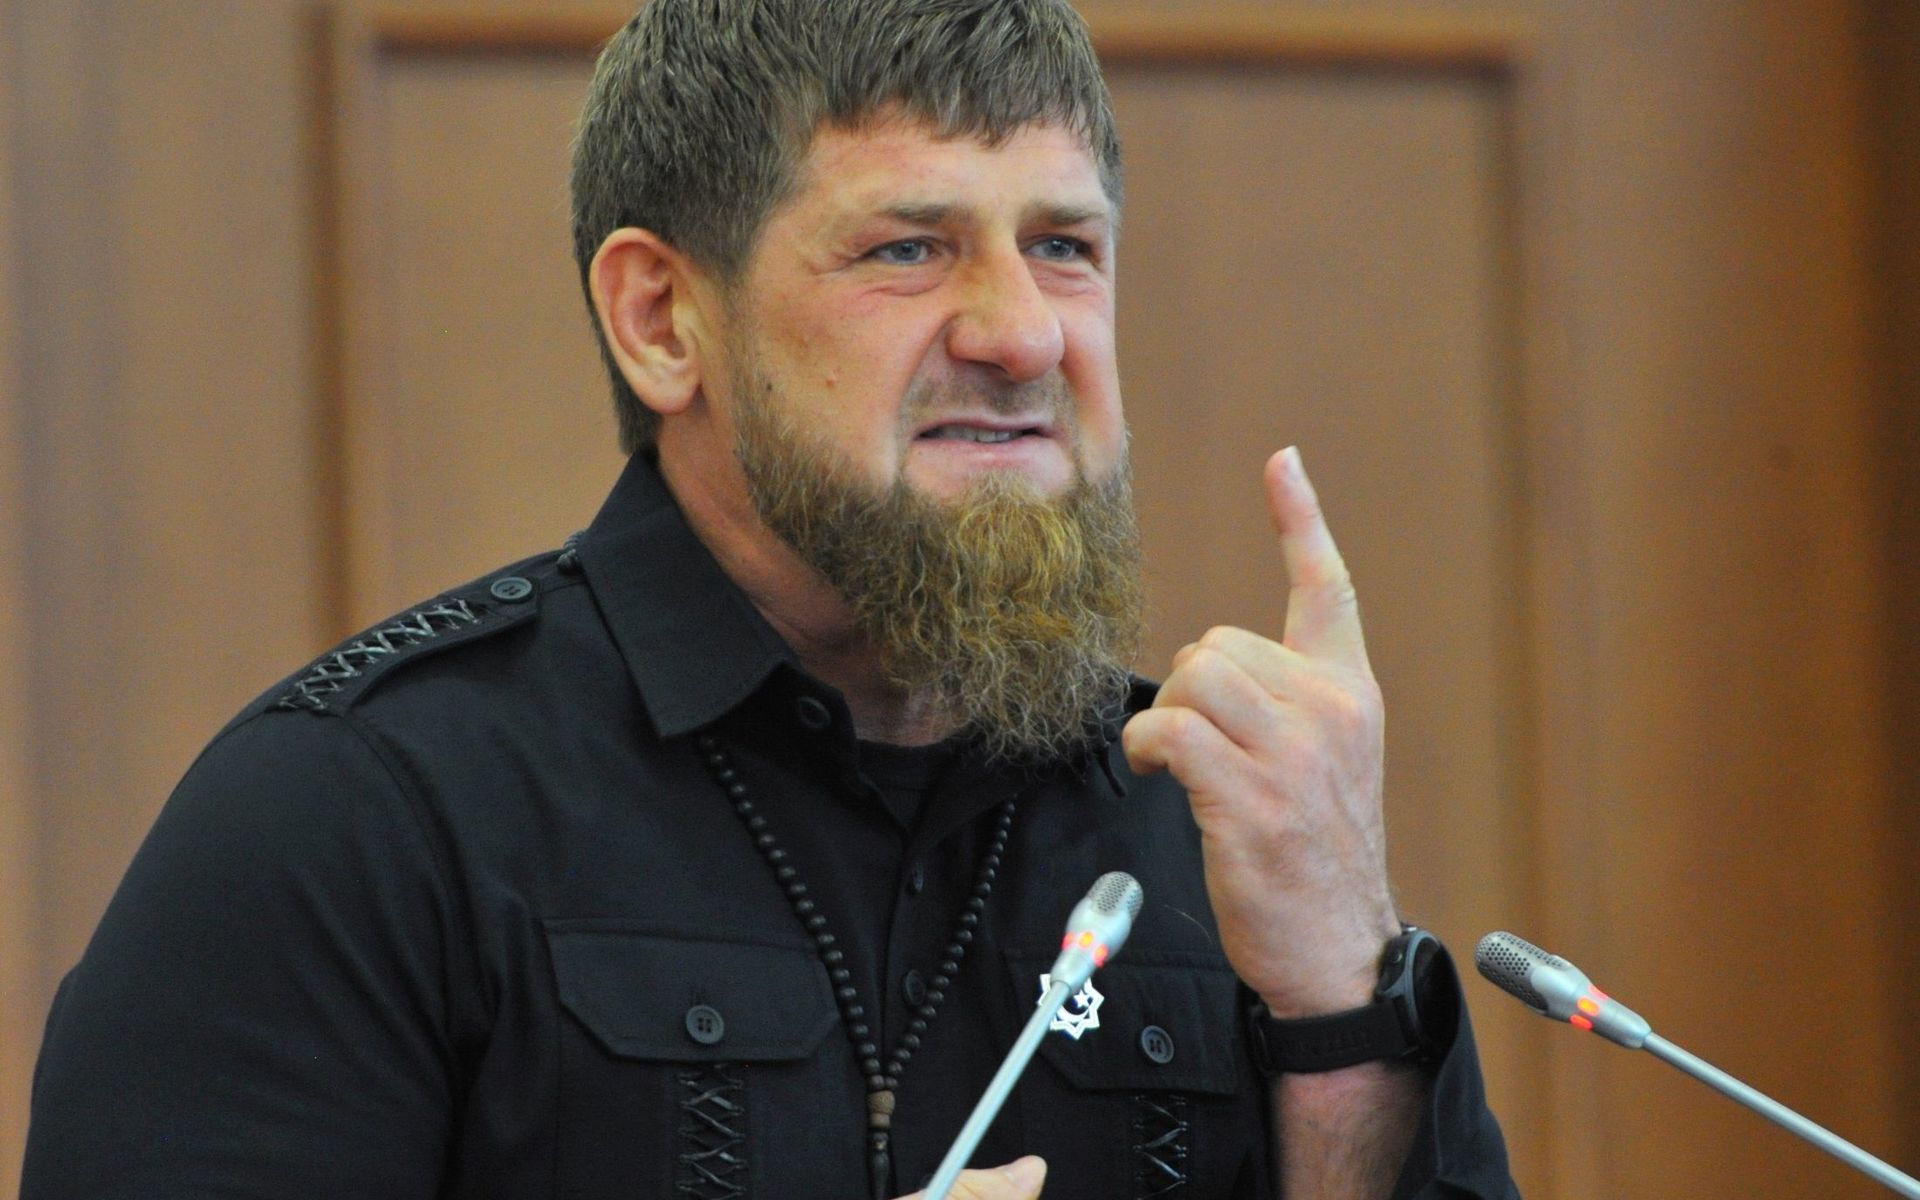 Verfolgung Homosexueller in Tschetschenien: Ende Juni soll darüber eine HBO-Doku erscheinen